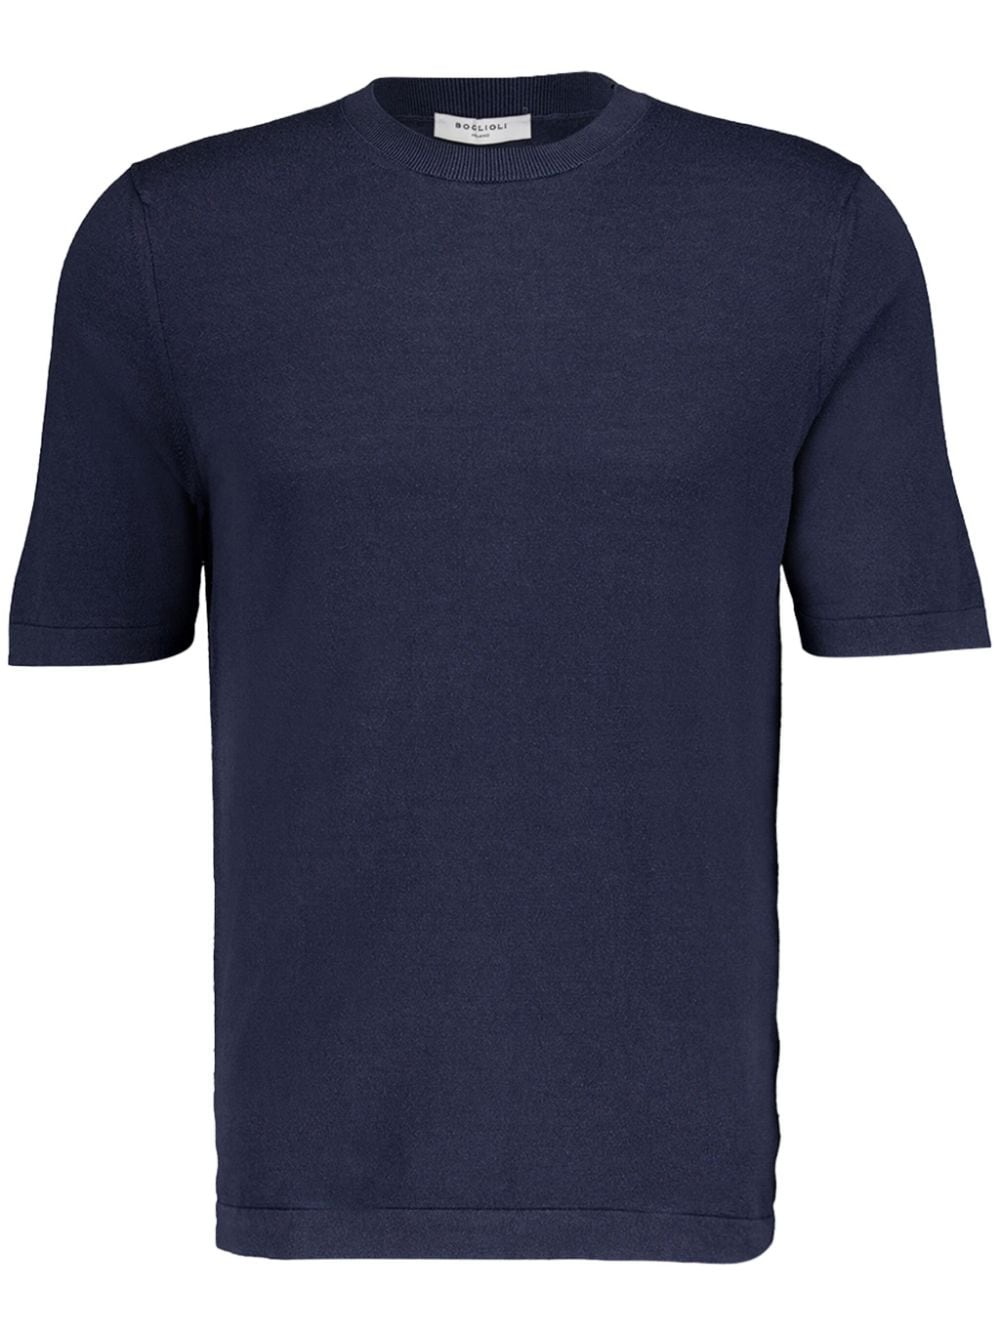 crew-neck silk-cotton blend T-shirt